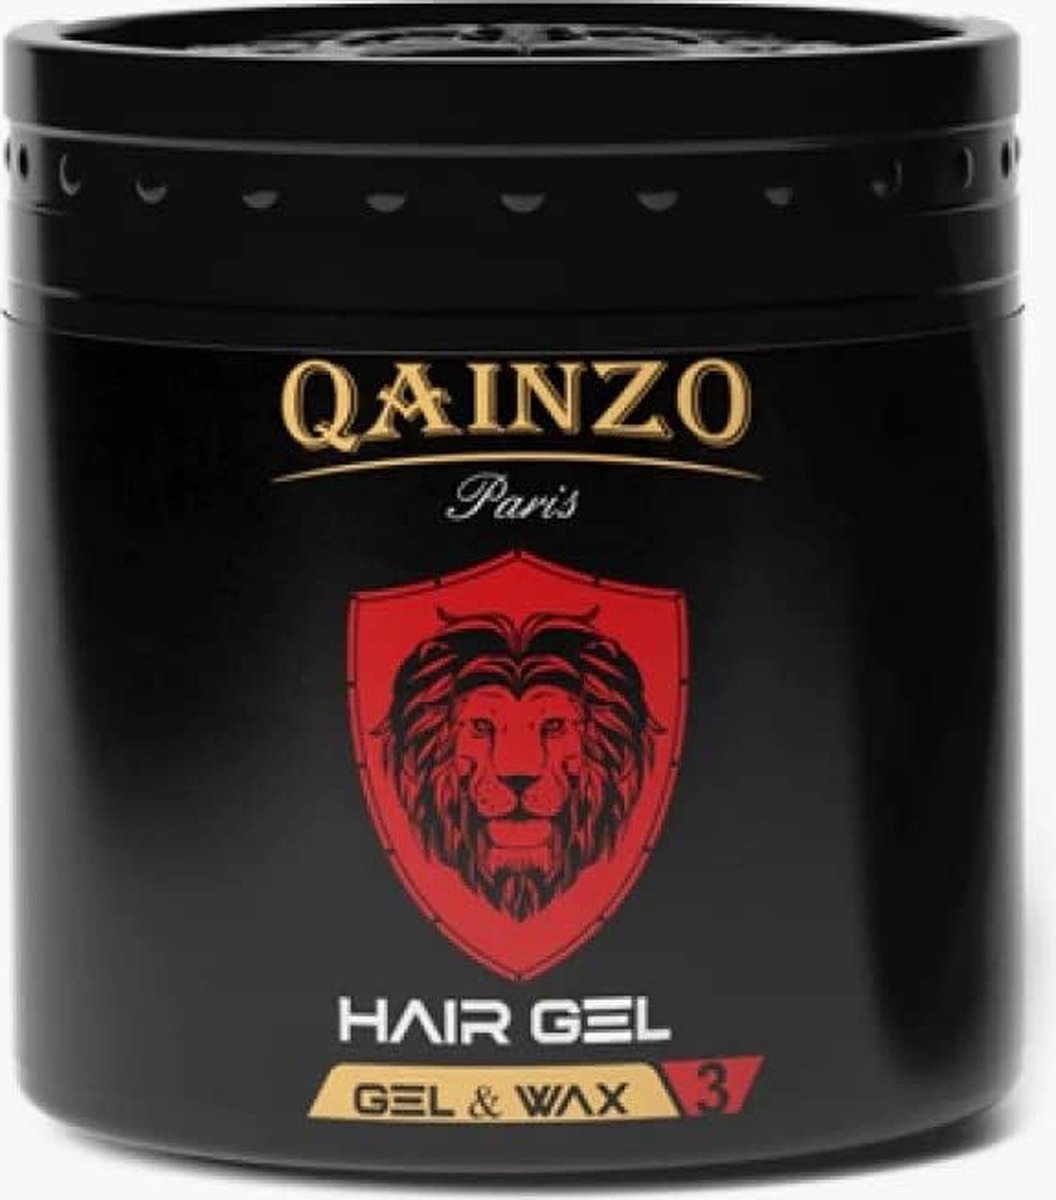 Qainzo Gel Wax 3 - 500ML - Hair Styling Gel & WAX